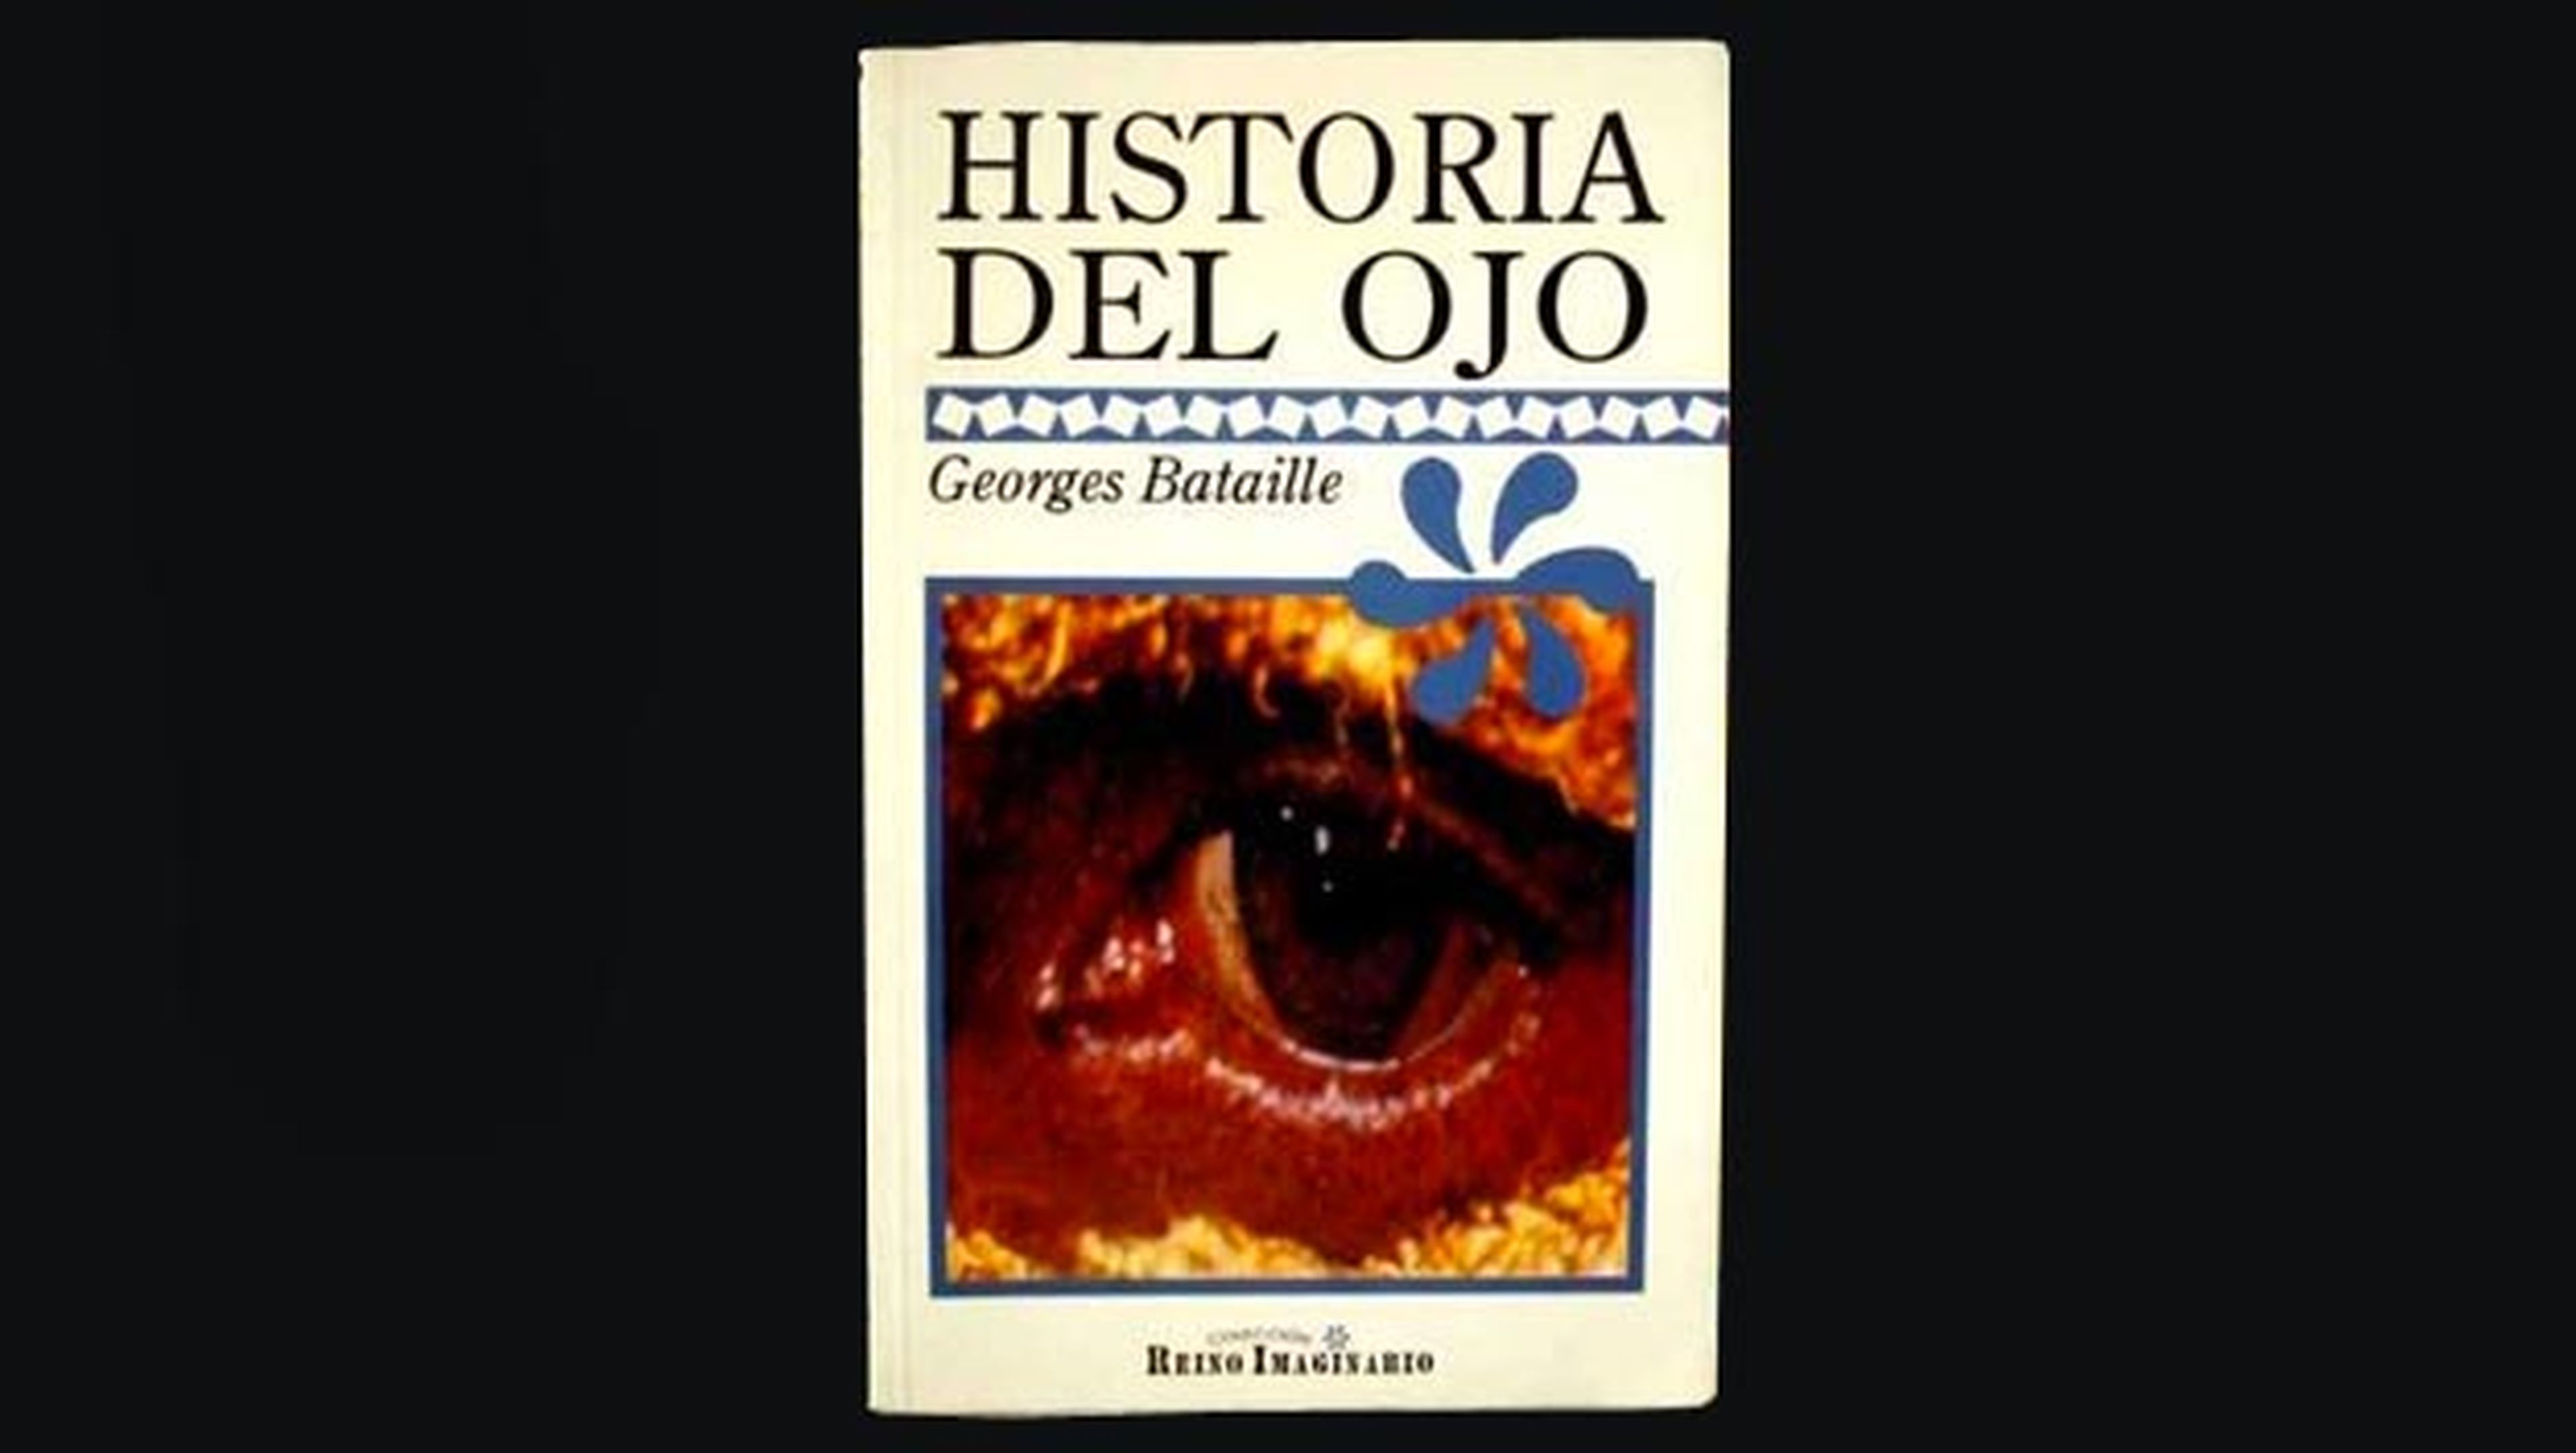 Historia del ojo de Georges Bataille